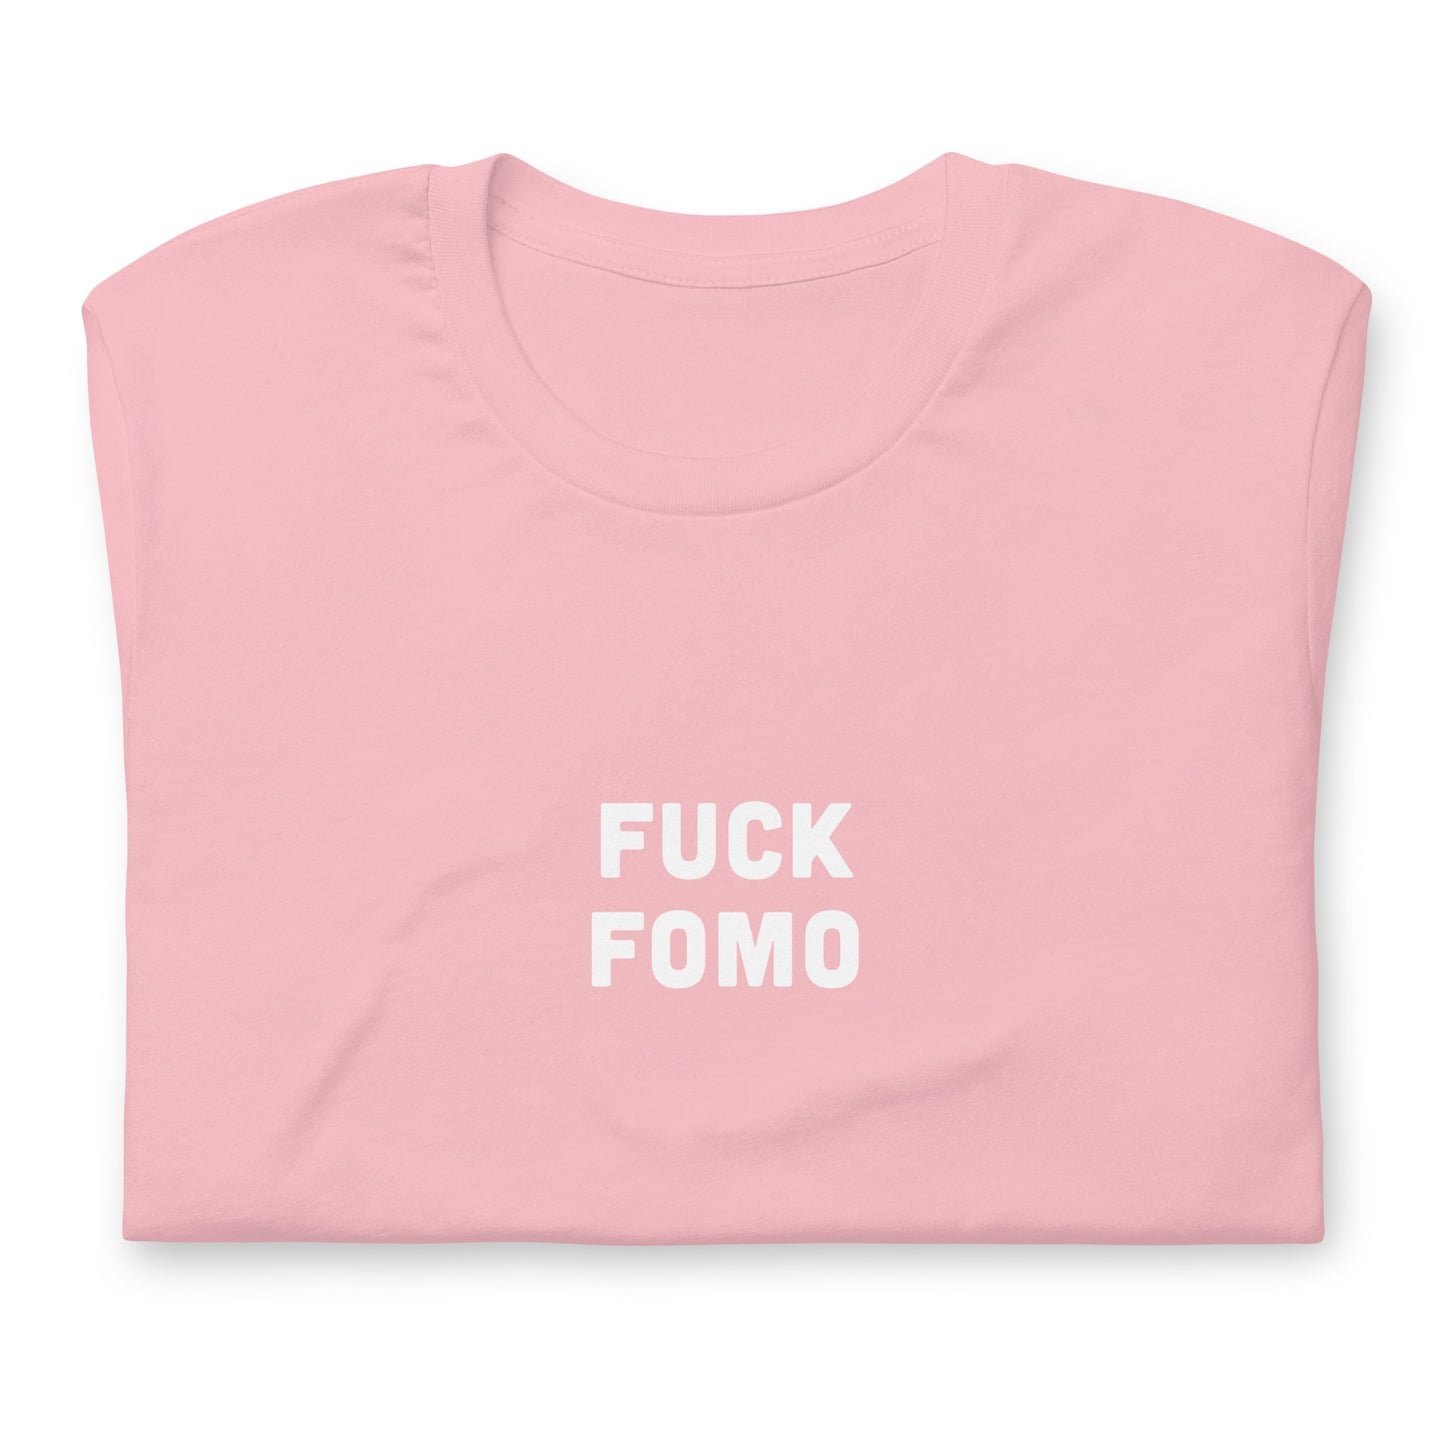 Fuck Fomo T-Shirt Size S Color Asphalt